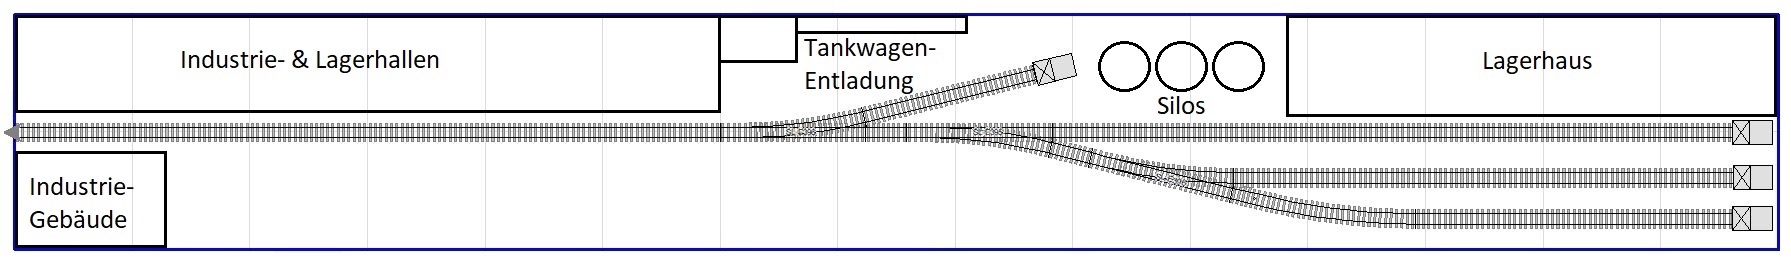 Gleisplan mit mehreren Industriegebäuden wie (Tankwagen-Entladung oder Lagerhäusern) für den Inglenook